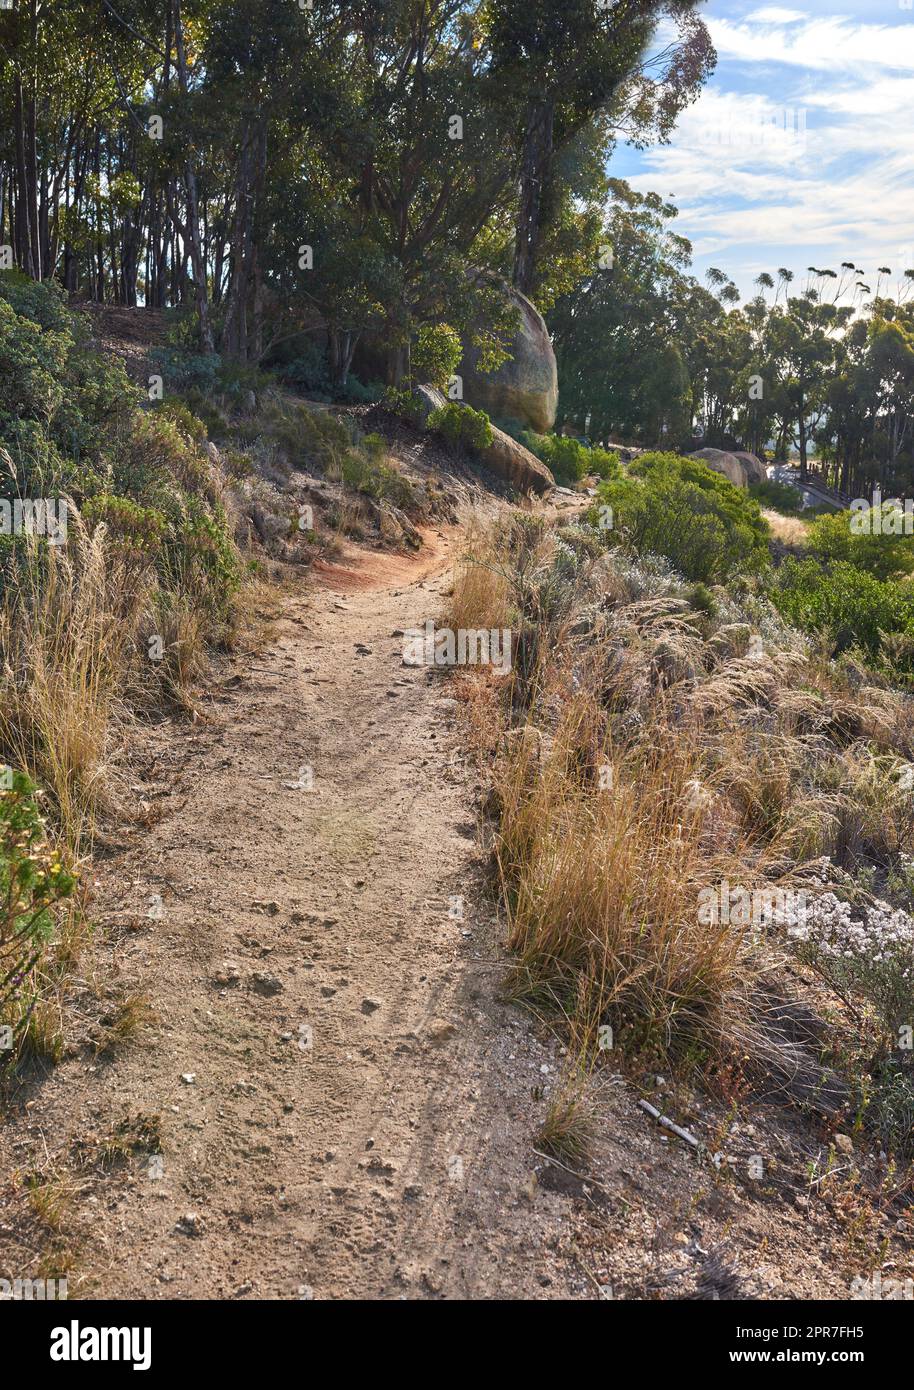 Paysage d'un sentier de randonnée près des bois cultivés sur la montagne de la Table au Cap. Forêt de grands Eucalyptus croissant sur une colline sablonneuse en Afrique du Sud surplombant l'océan et le paysage urbain Banque D'Images